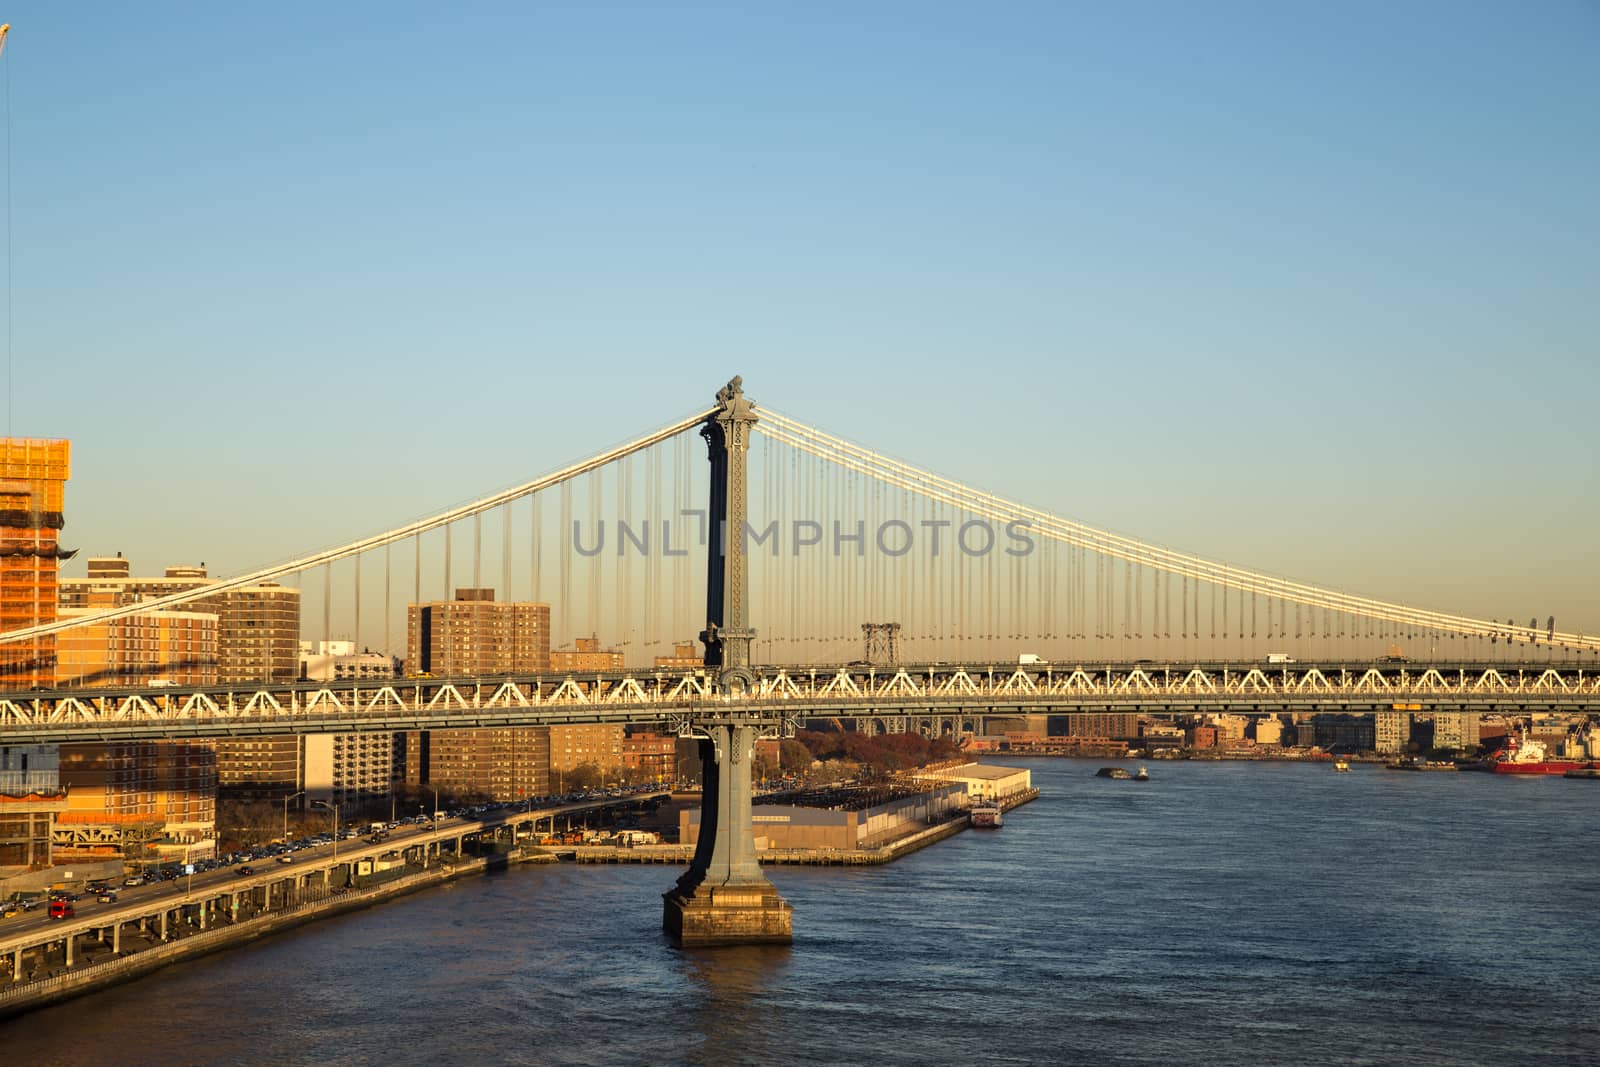 One of the pillars of Manhattan Bridge in New York City